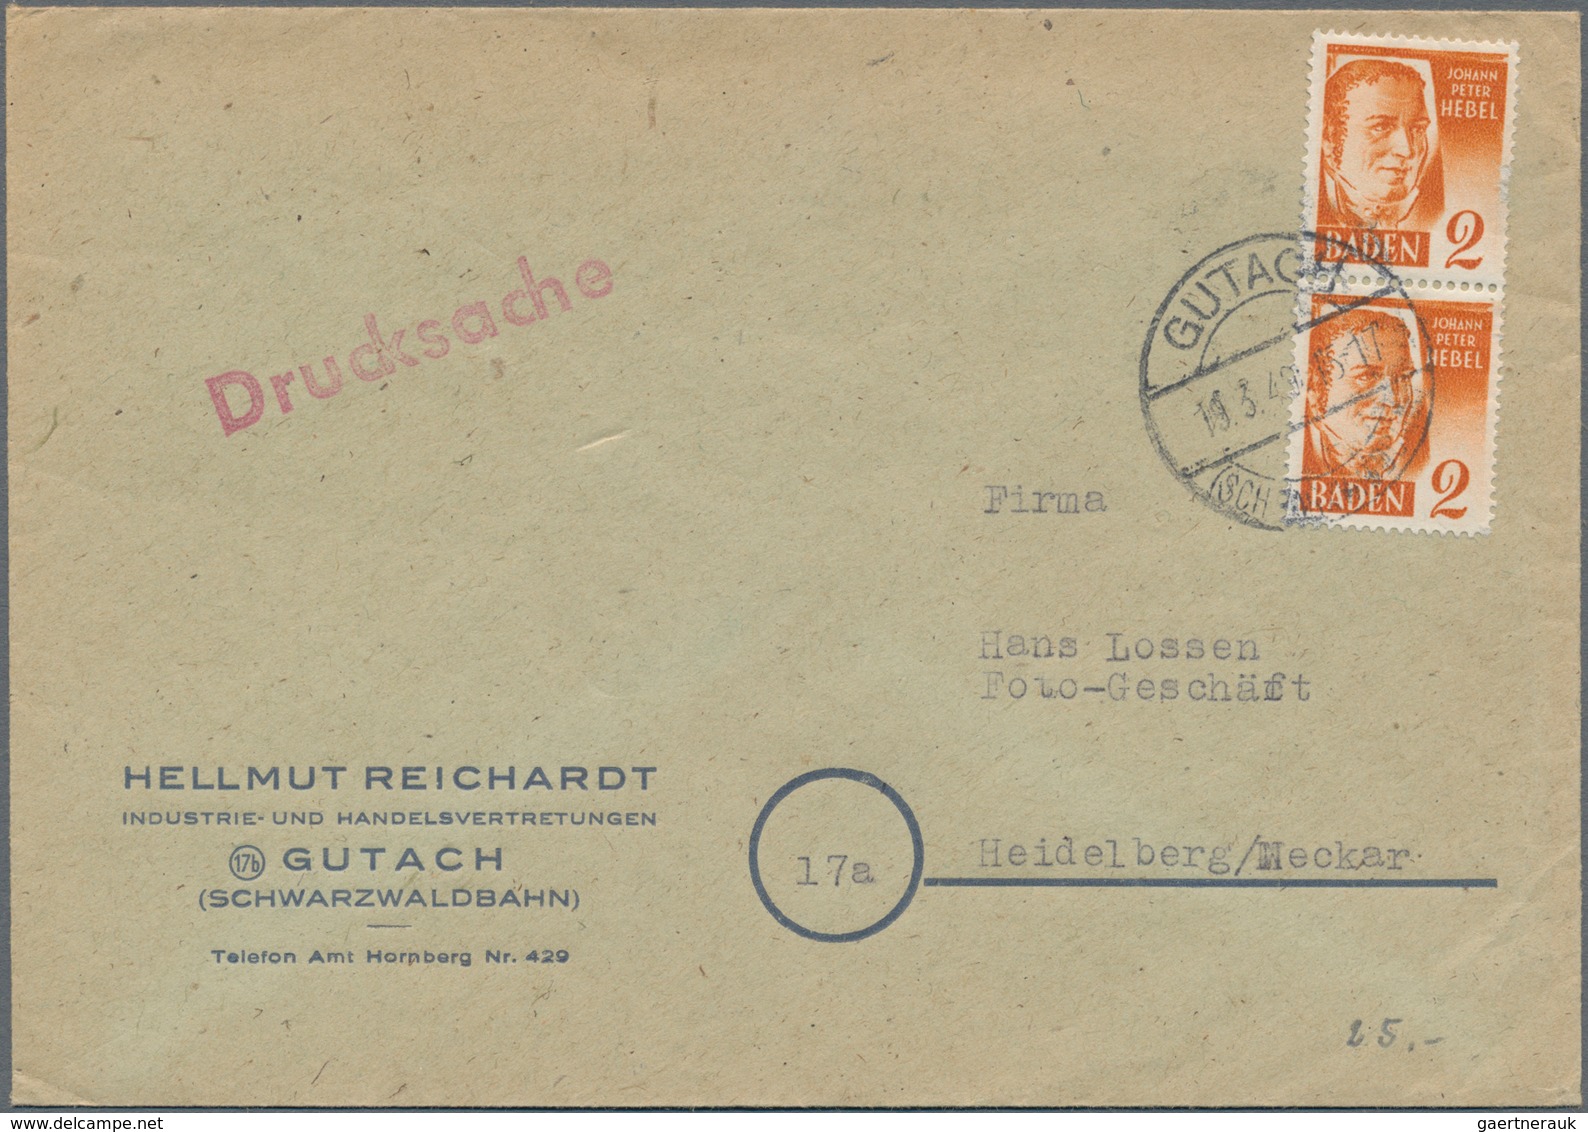 Bundesrepublik Deutschland: 1946/75 ca. 720 Briefe, Karten, Ganzsachen (incl. GAA auf Beleg), dabei